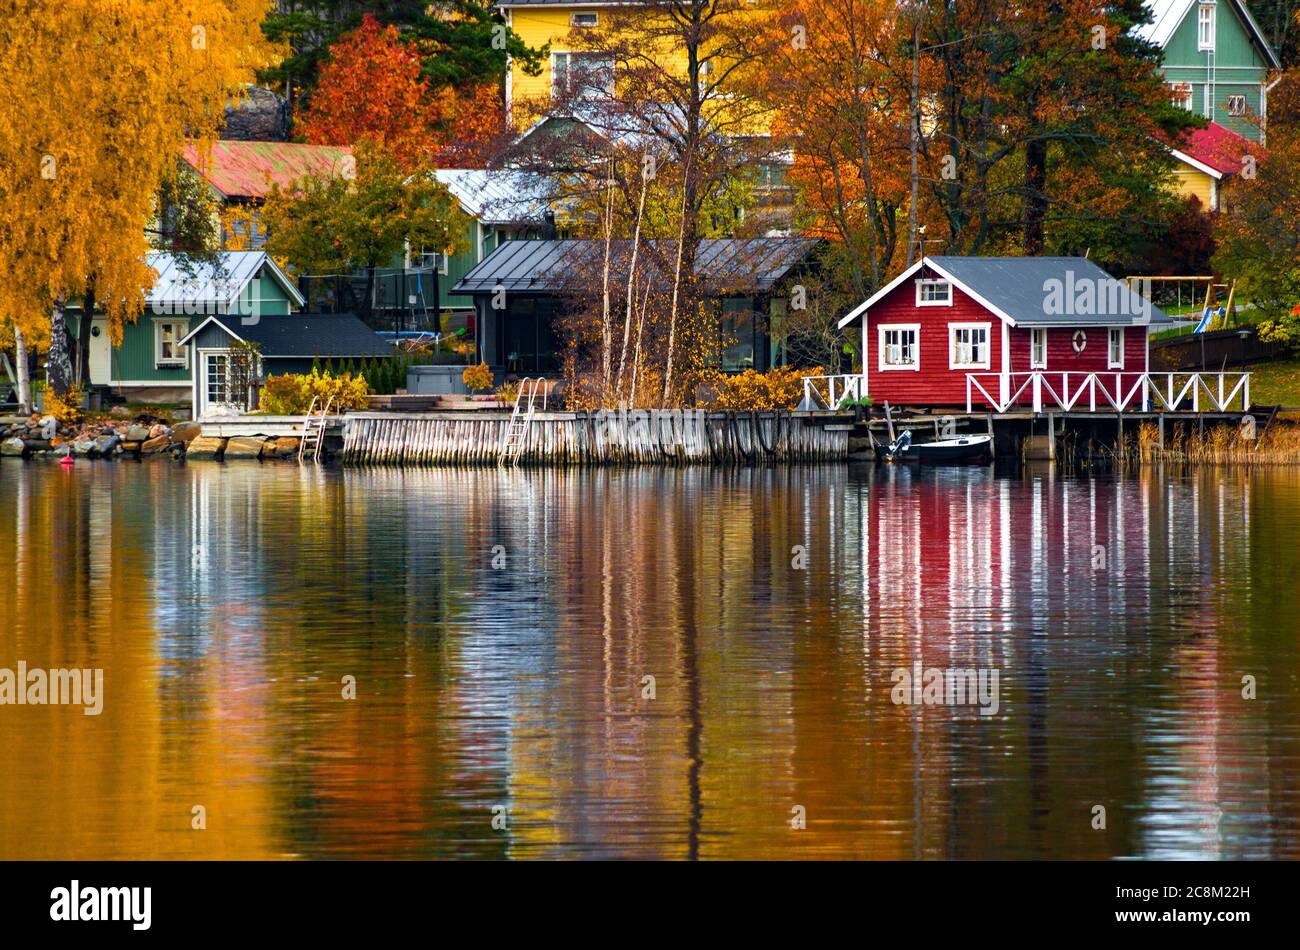 Maisons colorées et arbres se reflétant dans la surface de l'eau. Automne à Rauma, Finlande. Banque D'Images